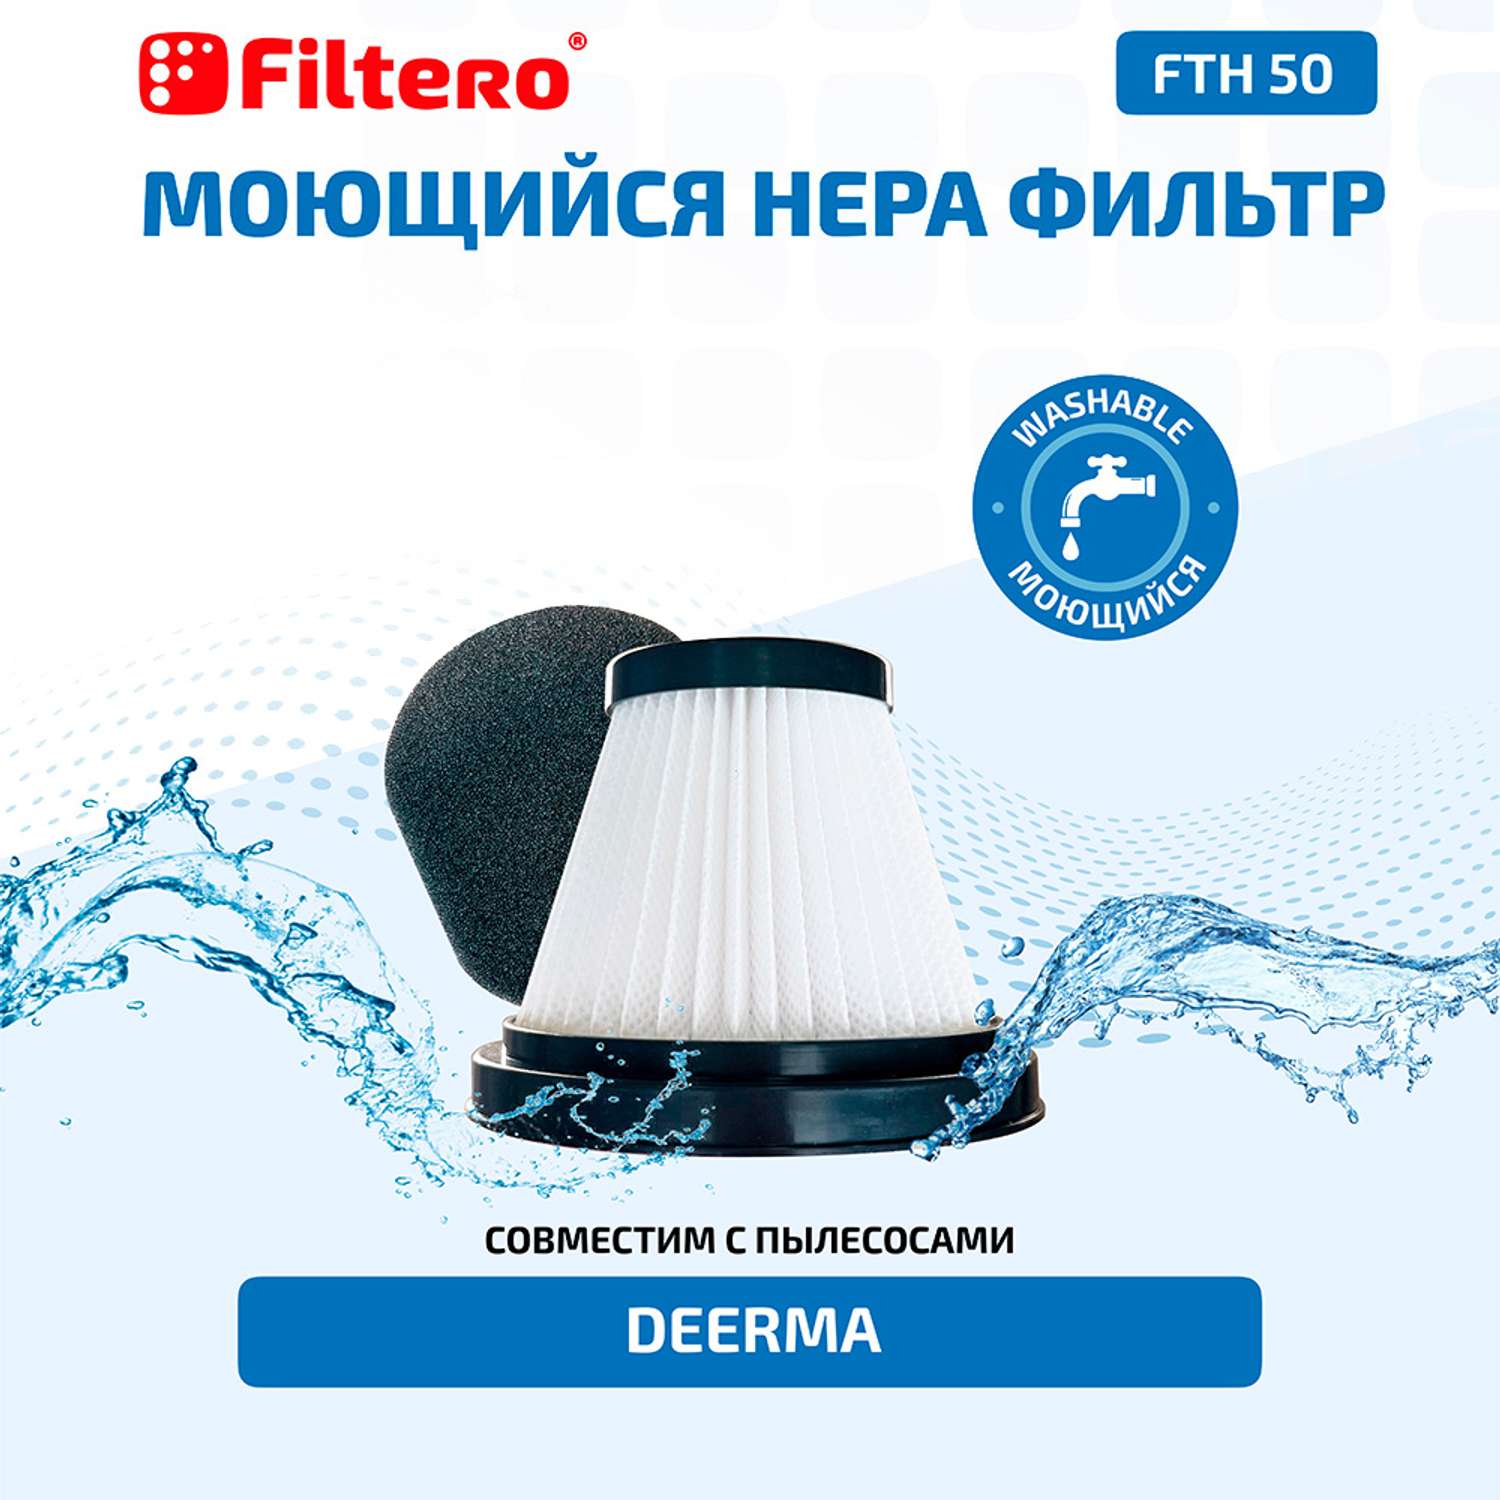 Набор фильтров Filtero FTH 50 для вертикального пылесоса Xiaomi - фото 4